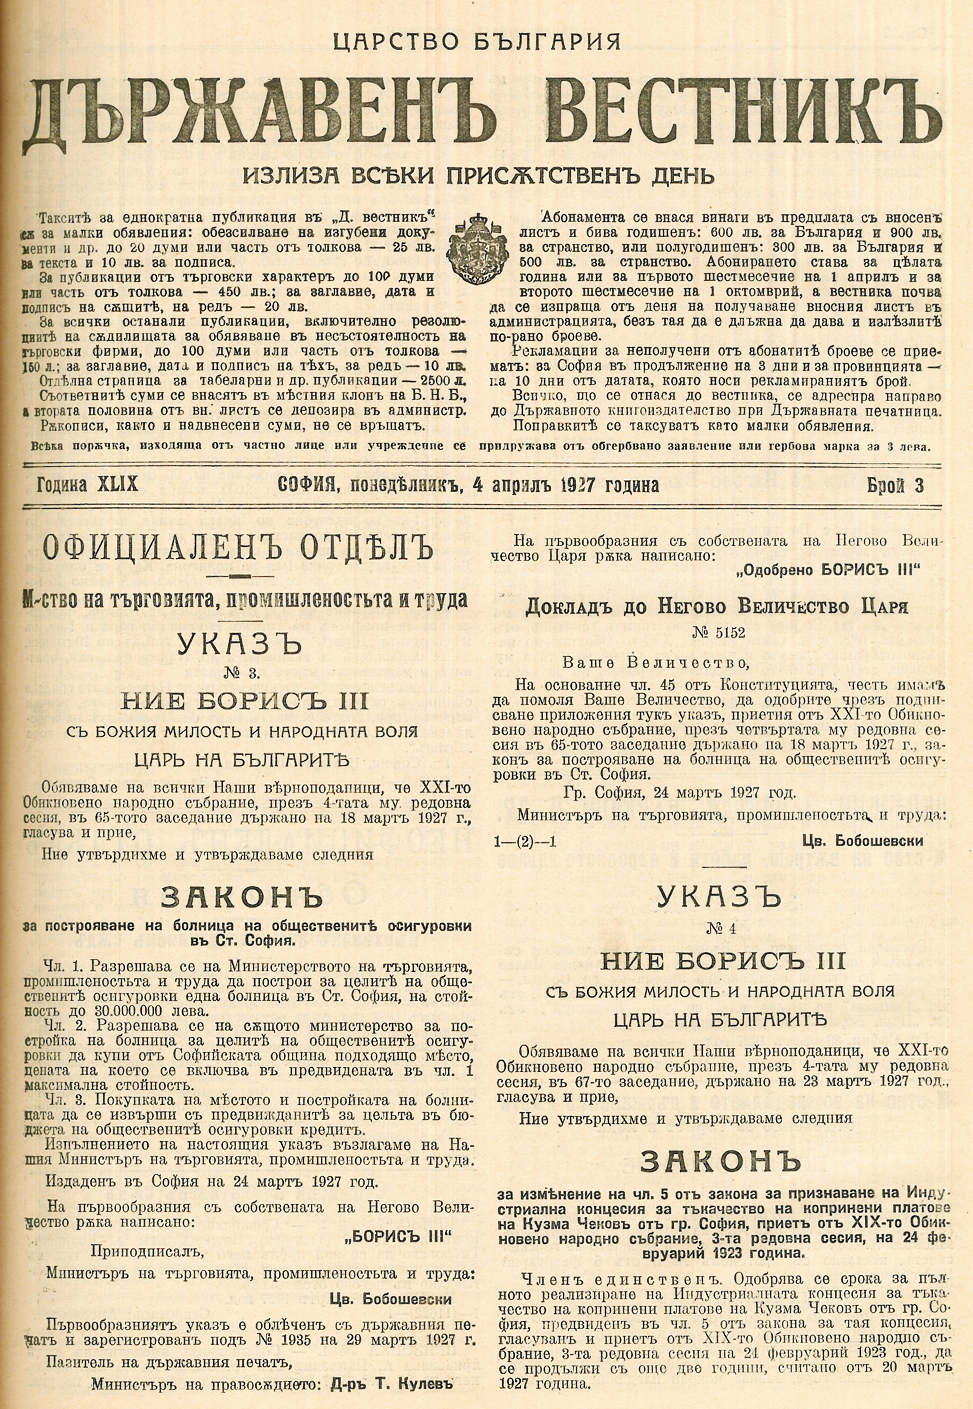 Указът в Държавен вестник, с който се създава Работническата болница „Царица Йоанна“